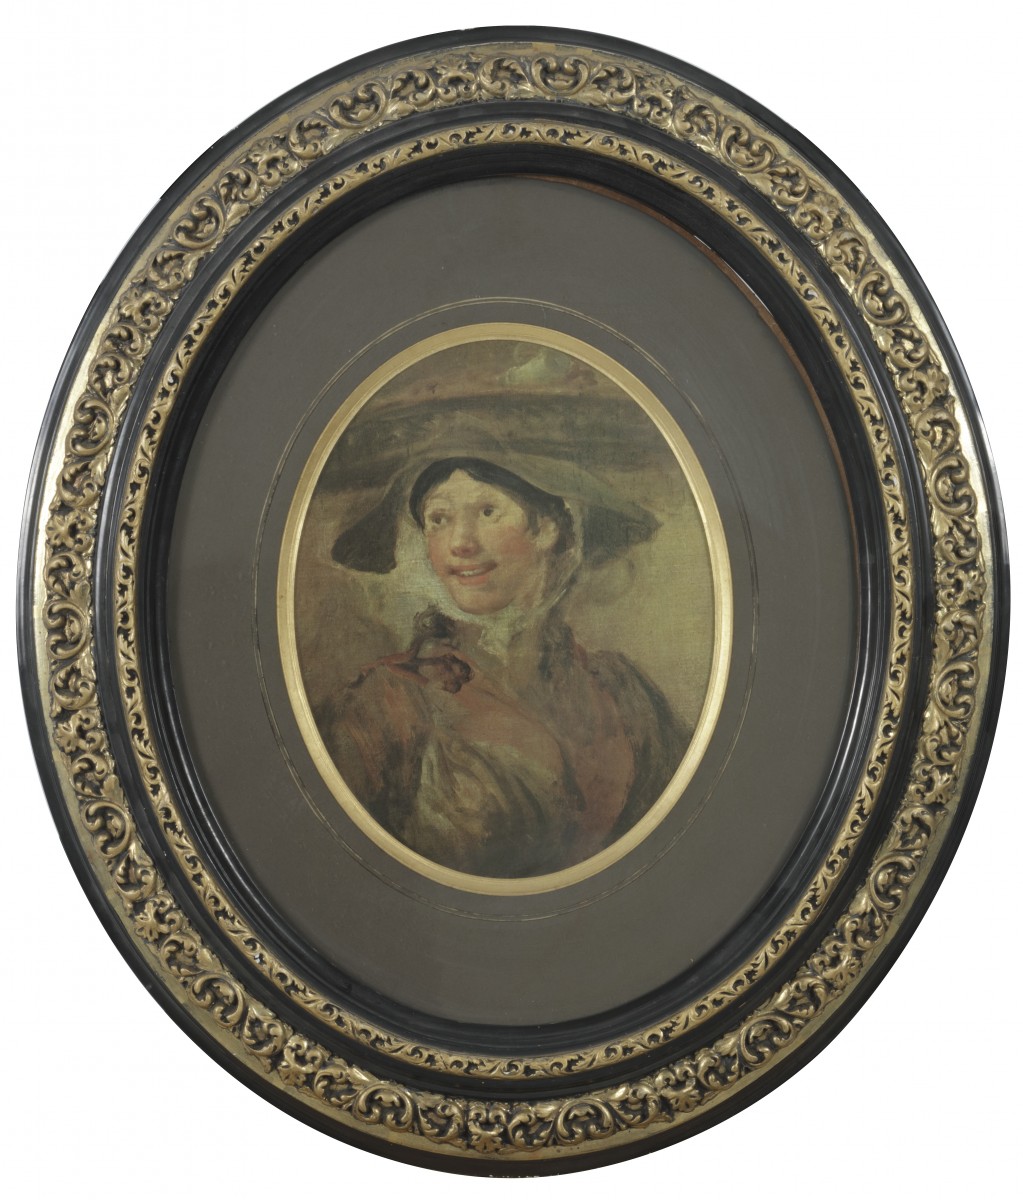 Een ovalen portret, garnalenmeisje, reproductie naar William Hogarth, 20e eeuw.